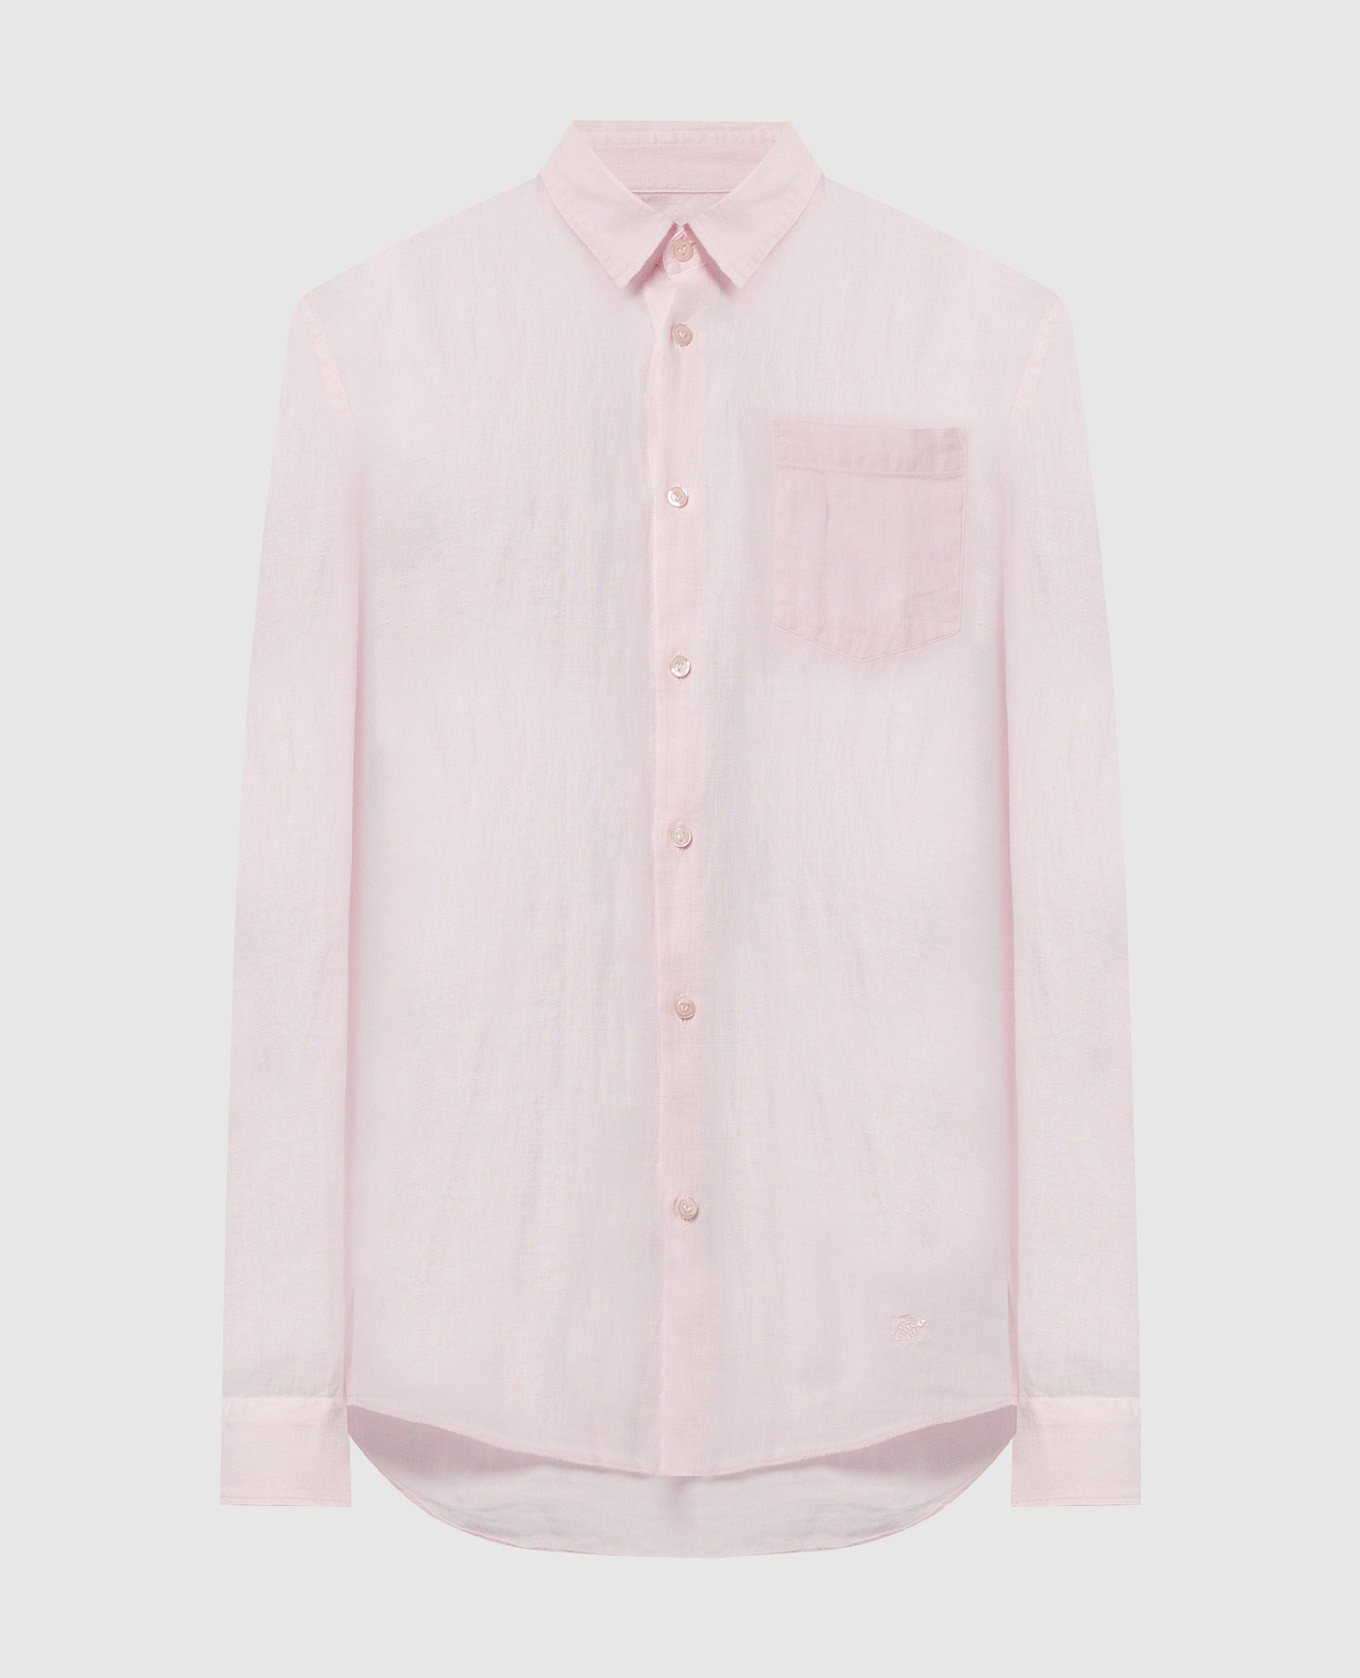 Розовая рубашка Caroubis из льна с логотипом.